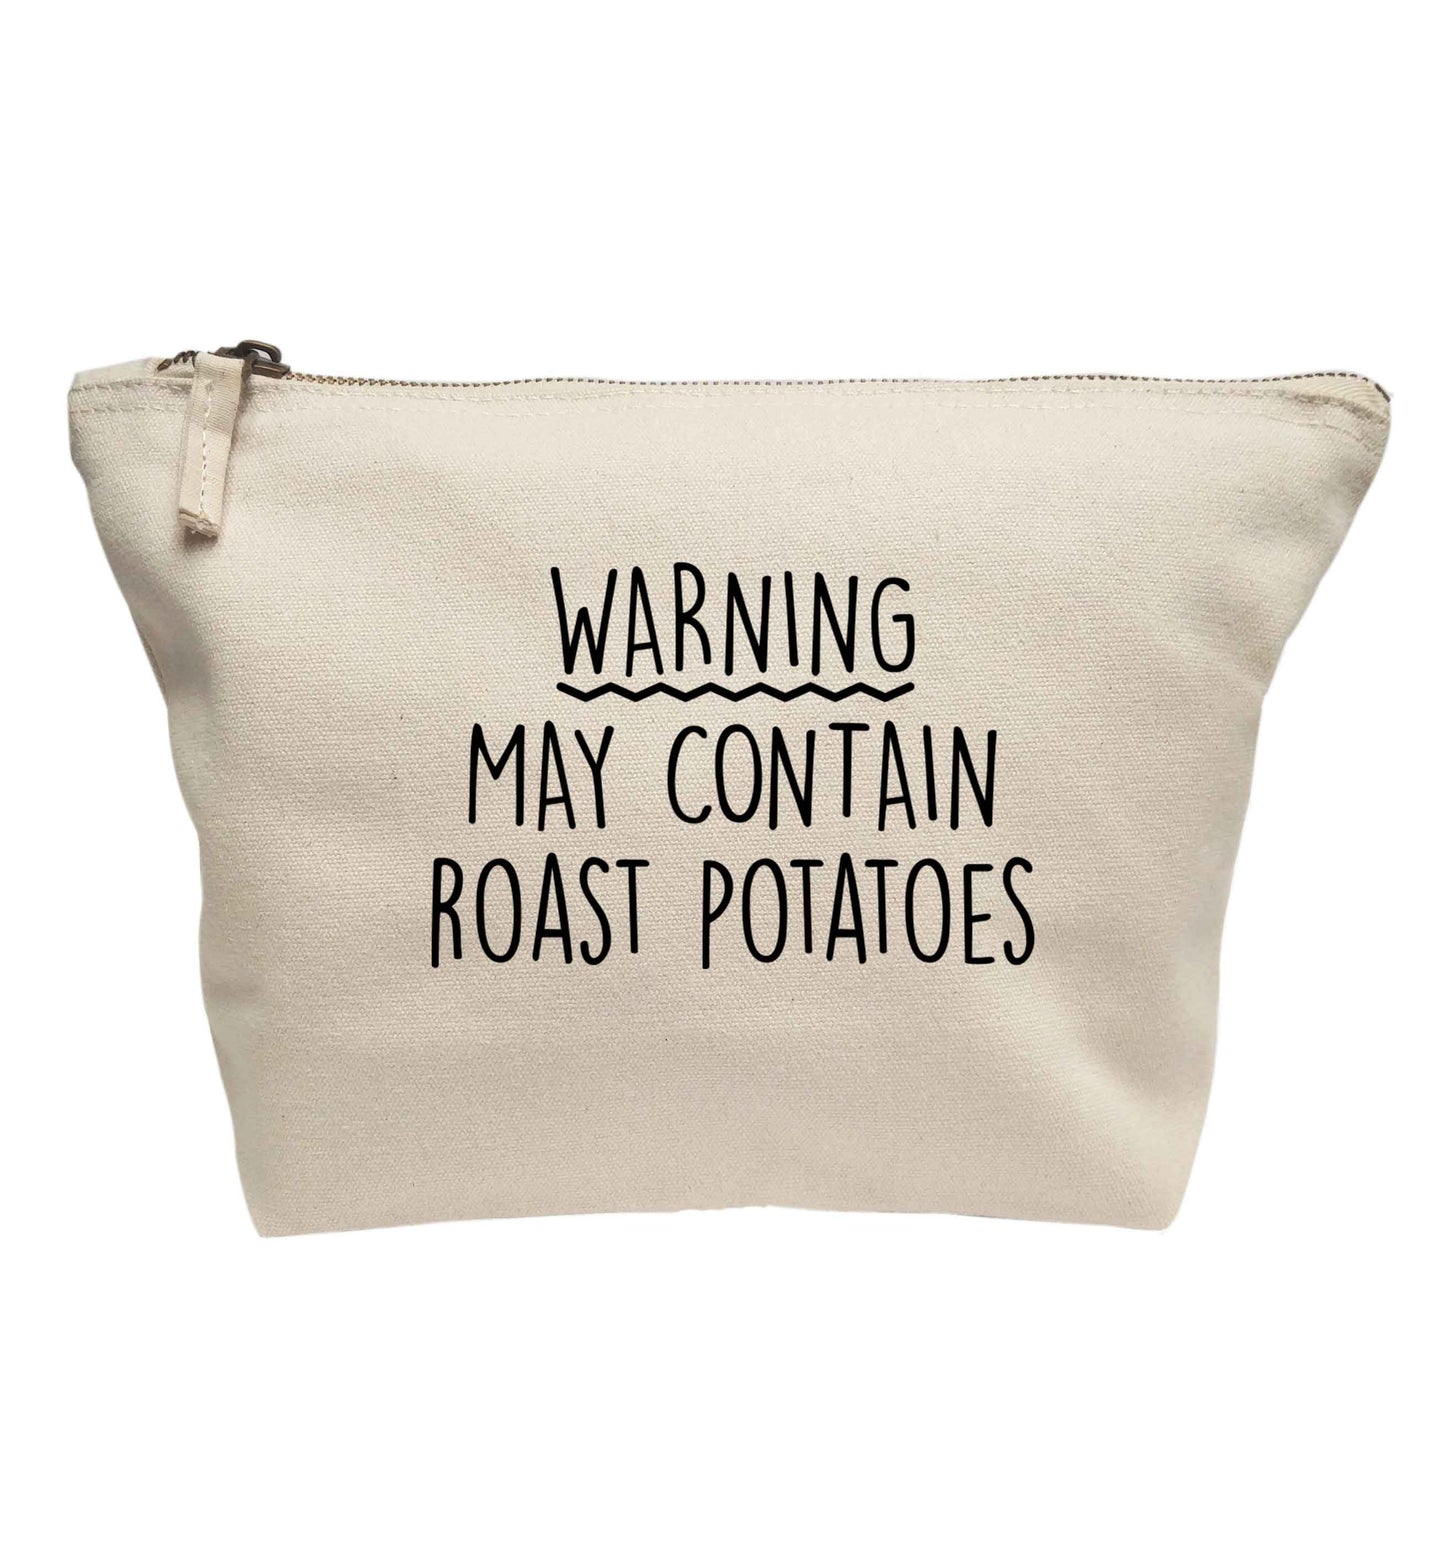 Warning may containg roast potatoes | Makeup / wash bag